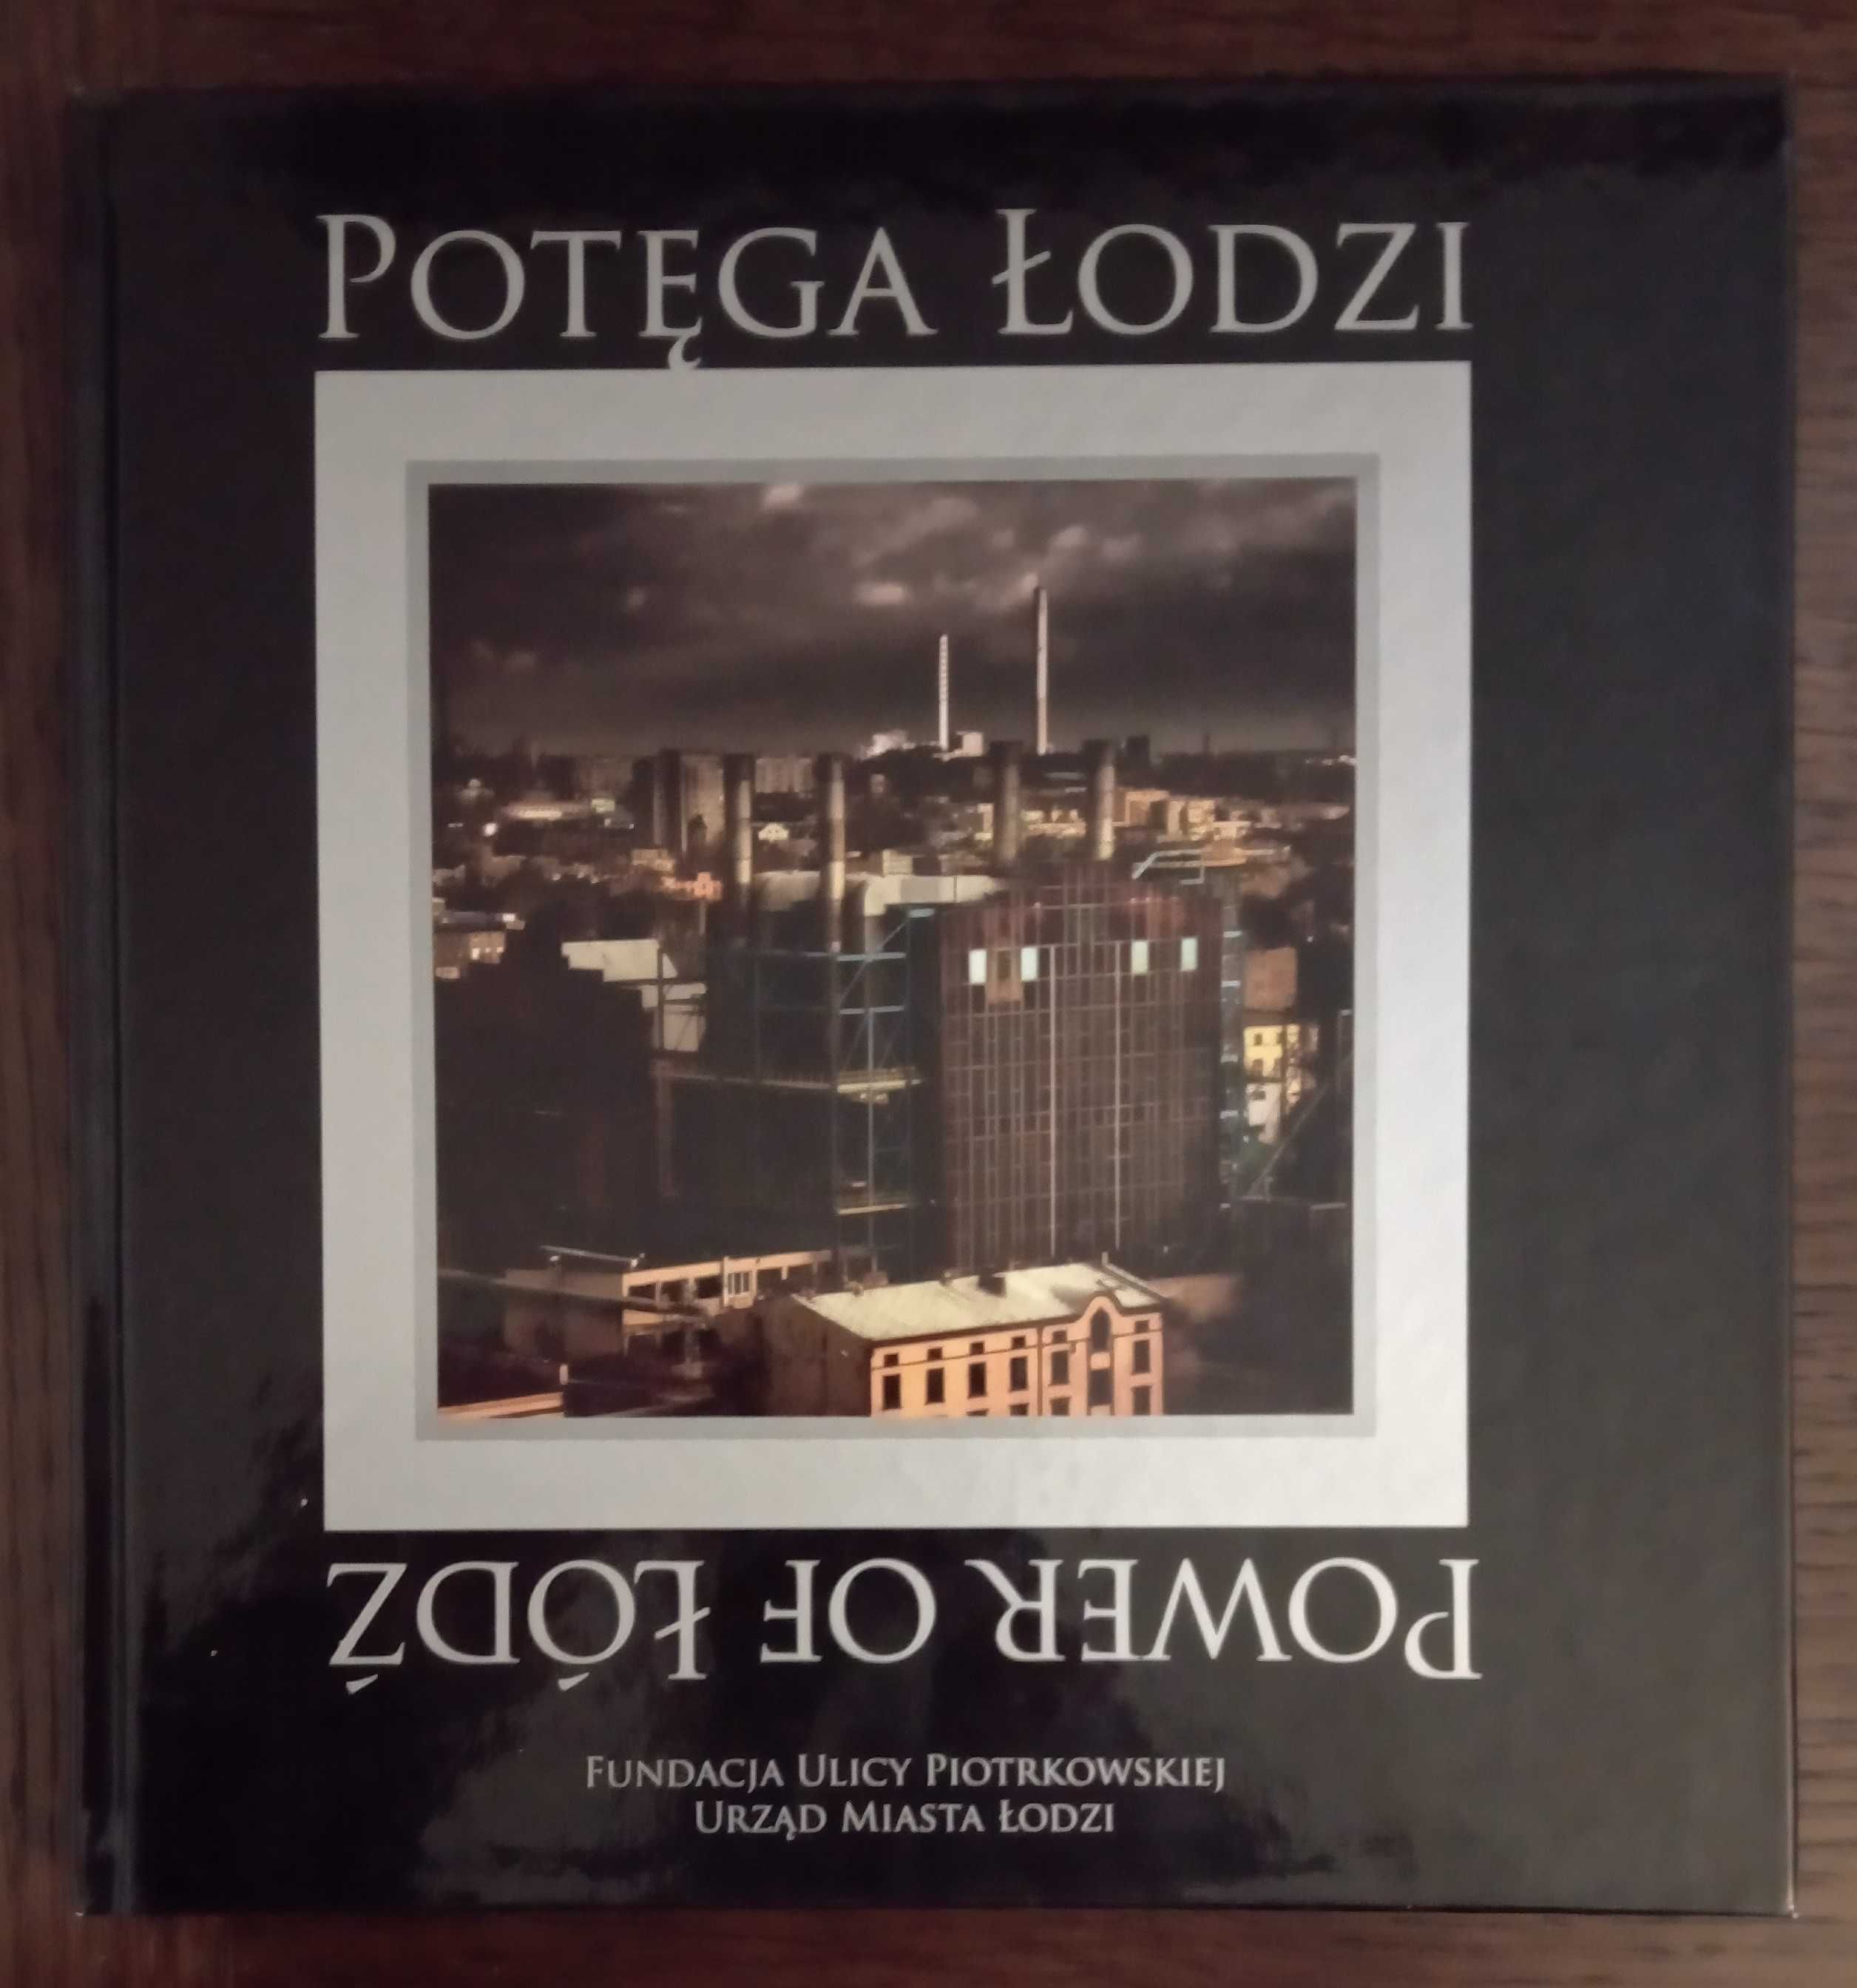 Potęga Łodzi - Power of Łódź